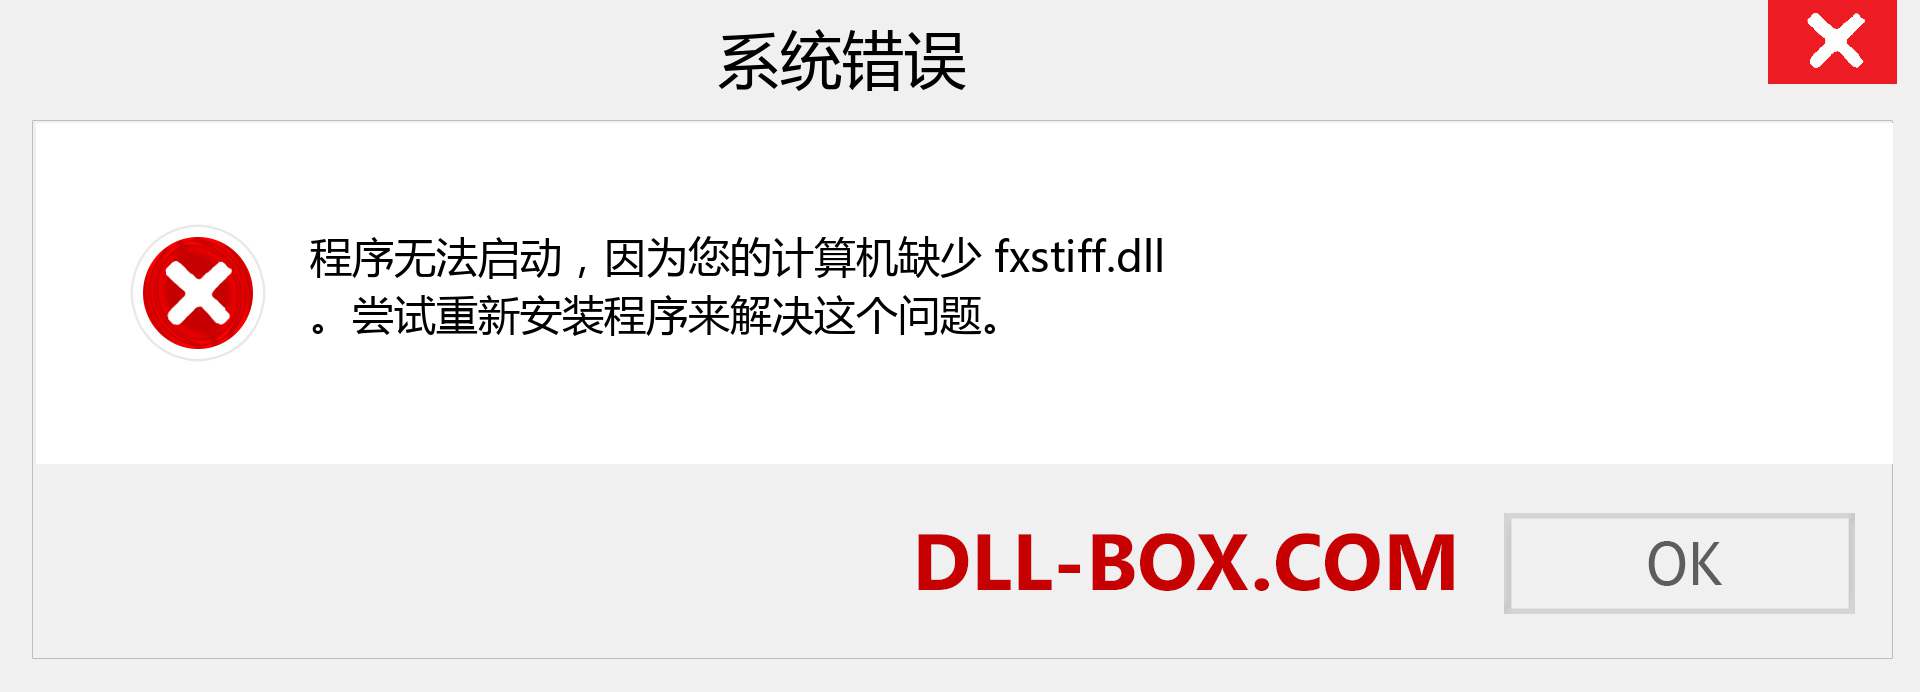 fxstiff.dll 文件丢失？。 适用于 Windows 7、8、10 的下载 - 修复 Windows、照片、图像上的 fxstiff dll 丢失错误